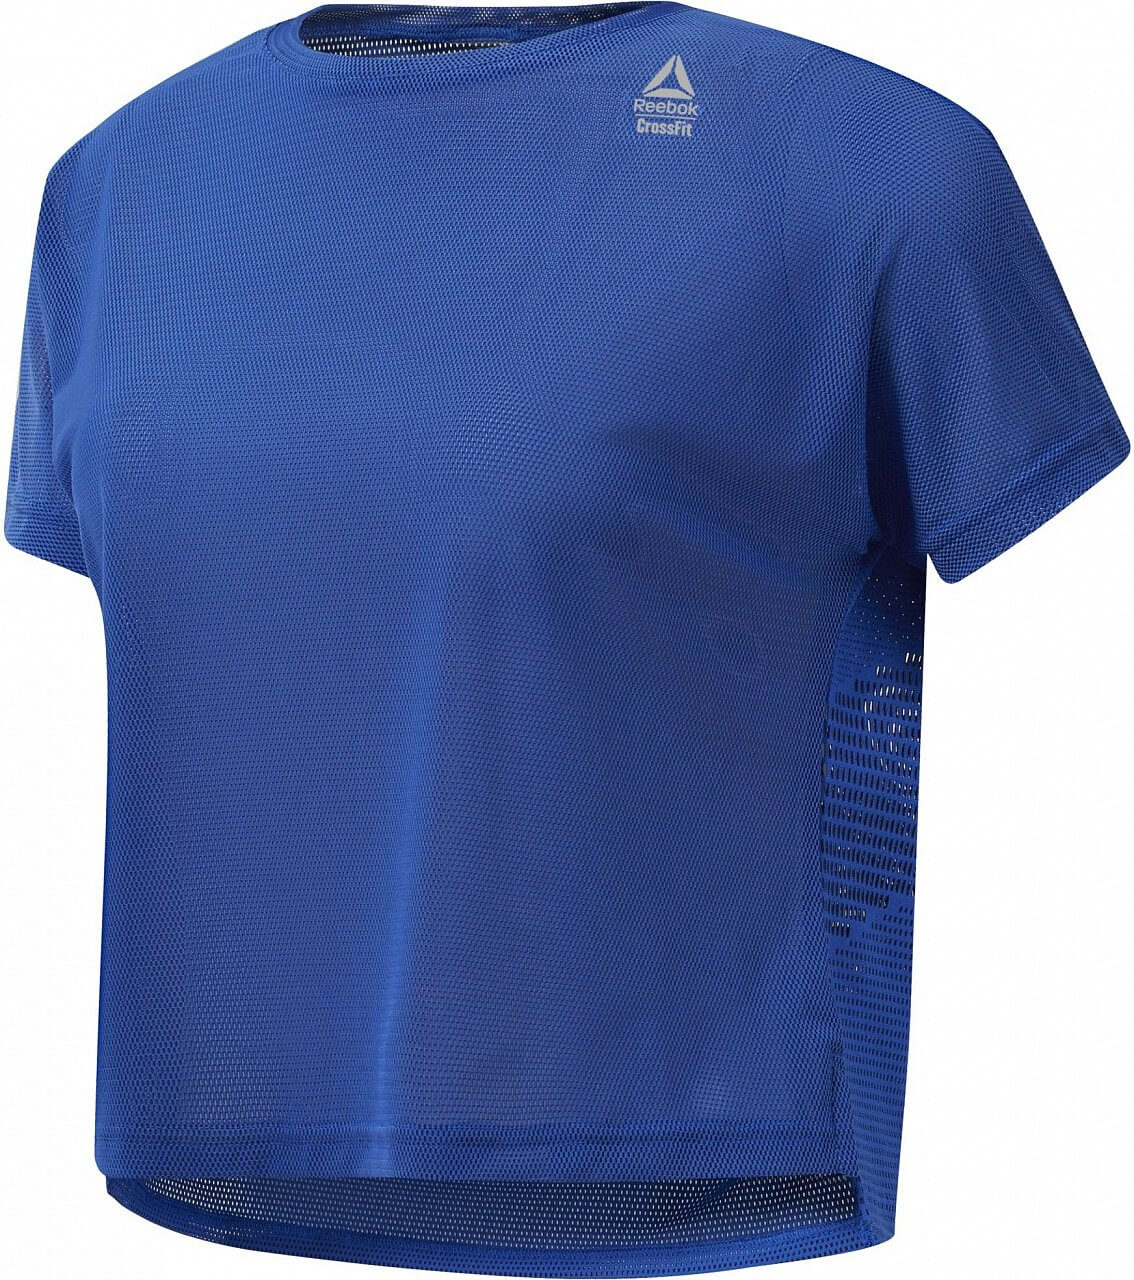 Dámské sportovní tričko Reebok CrossFit Jacquard Tee